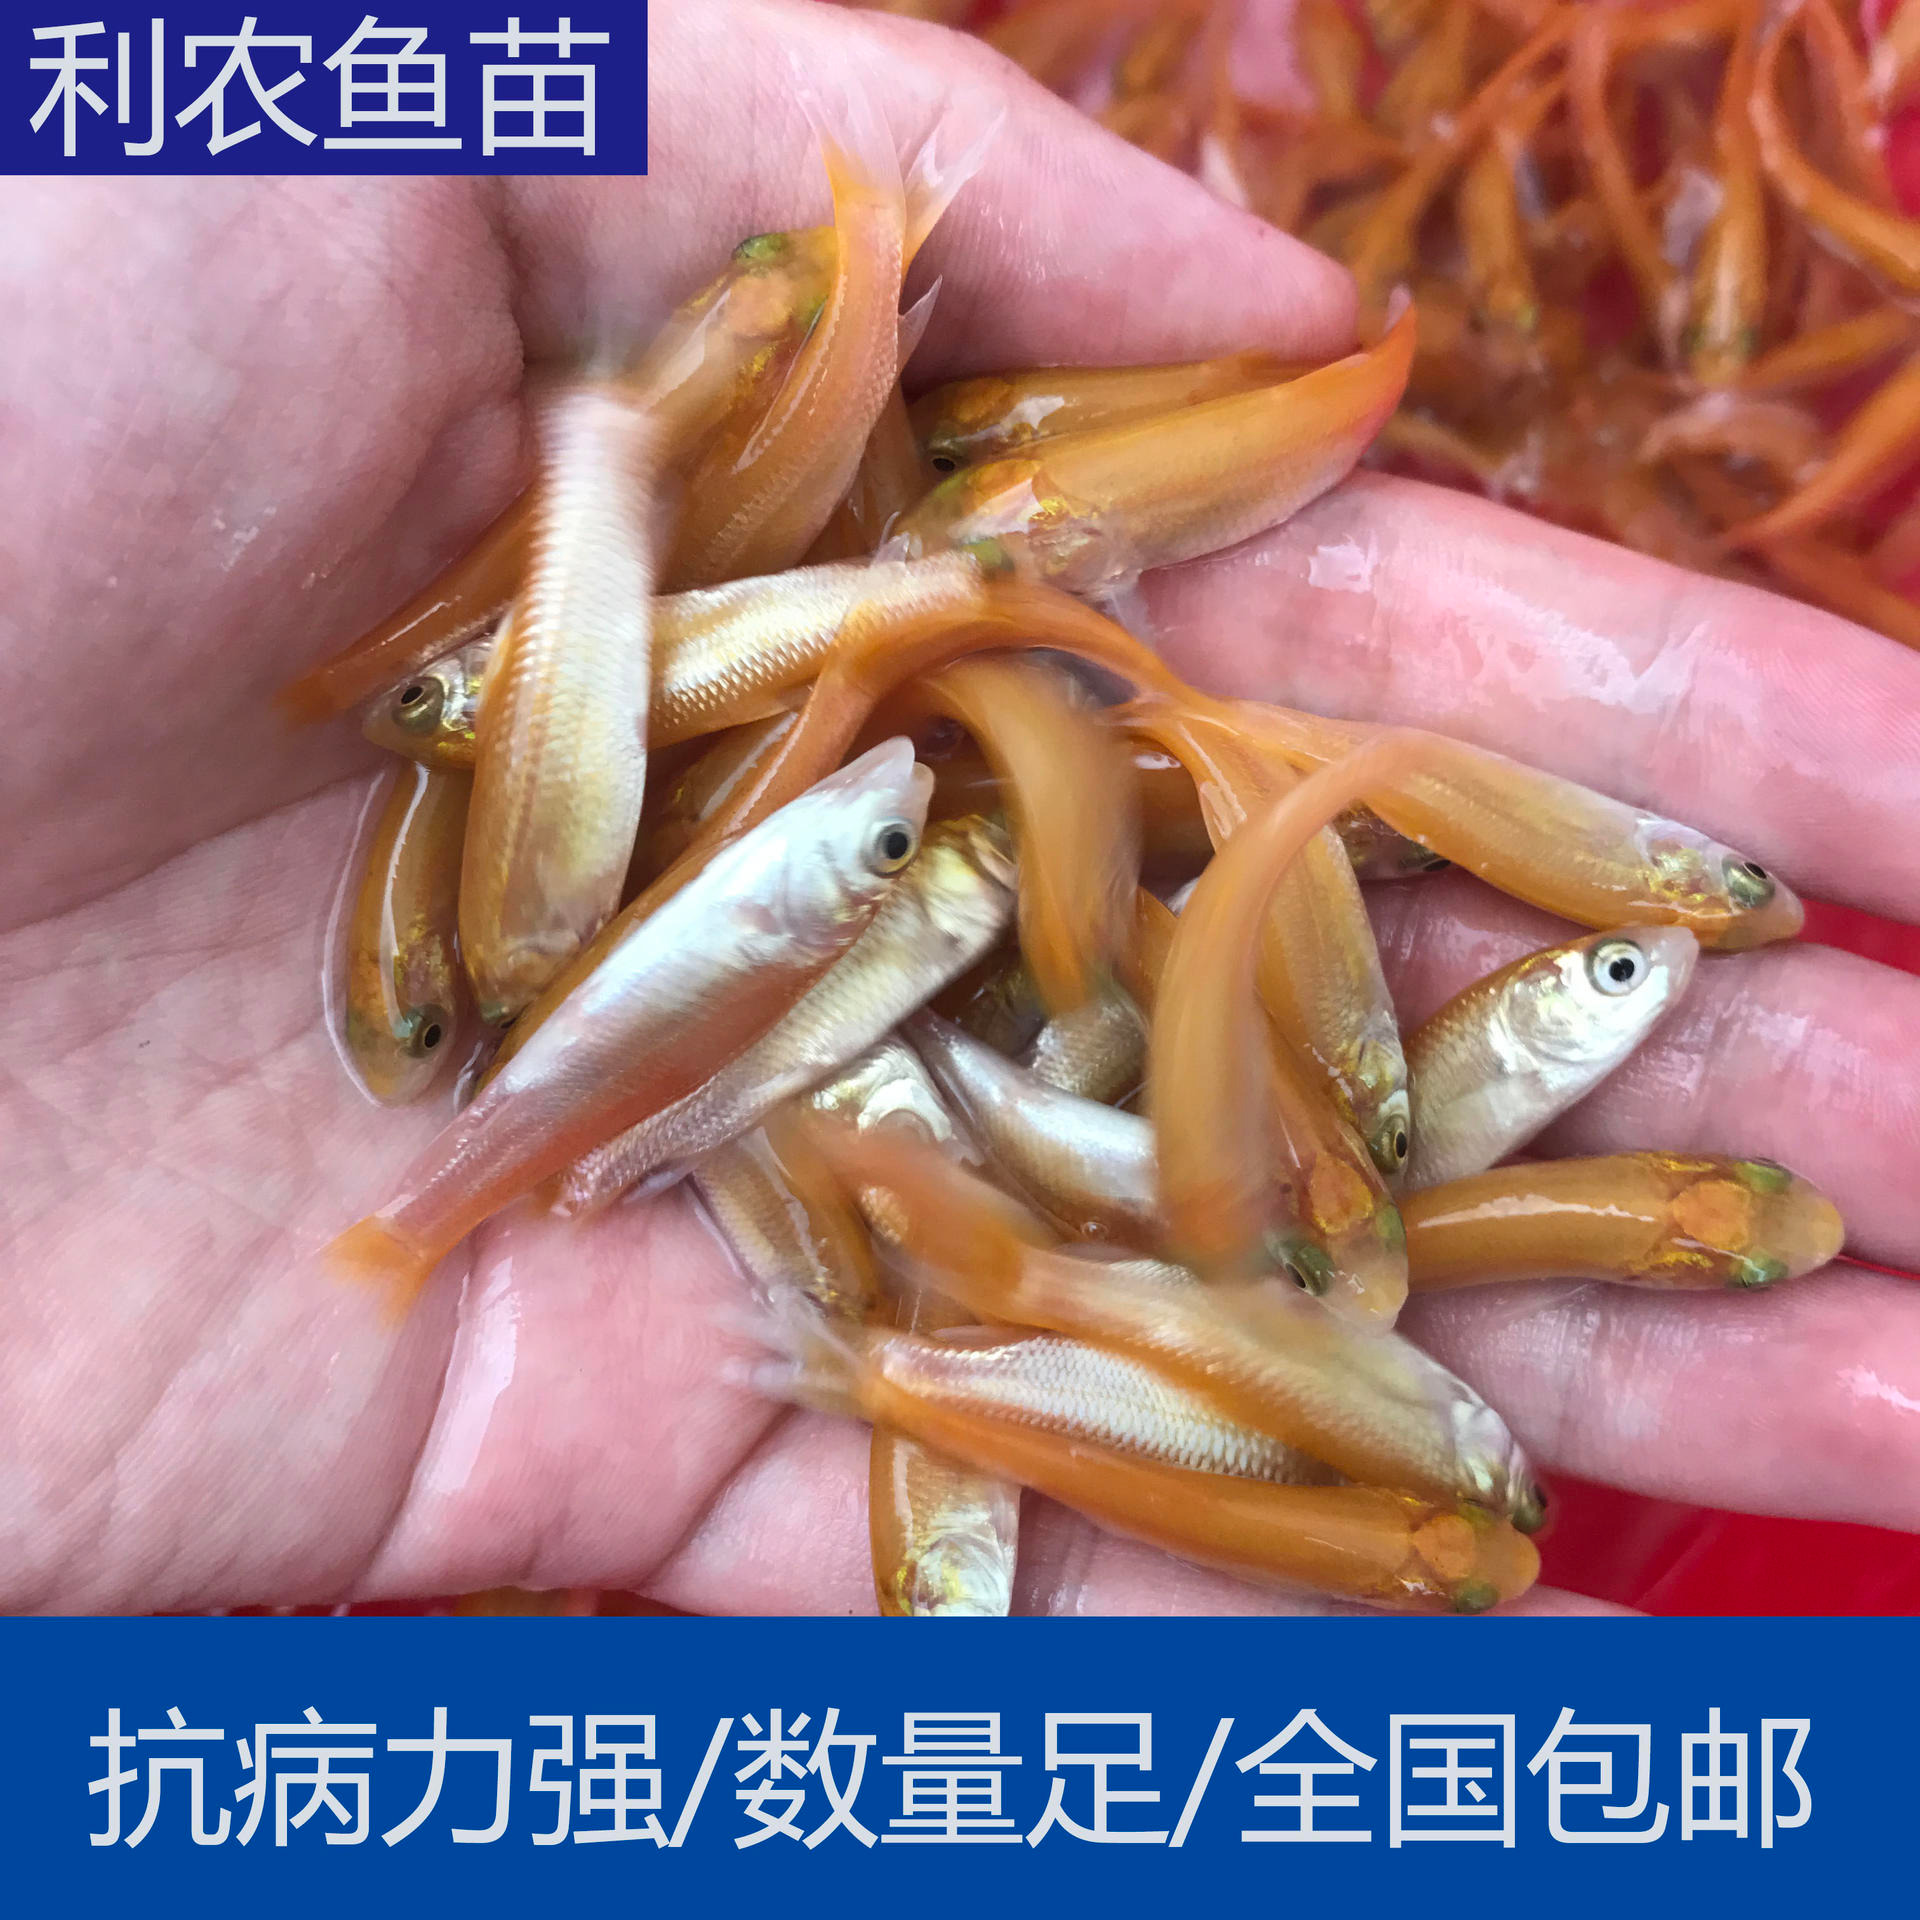 大量出售 贵州荔波金草鱼苗批发 4-5cm黄金草鱼苗大量上市 养殖支持